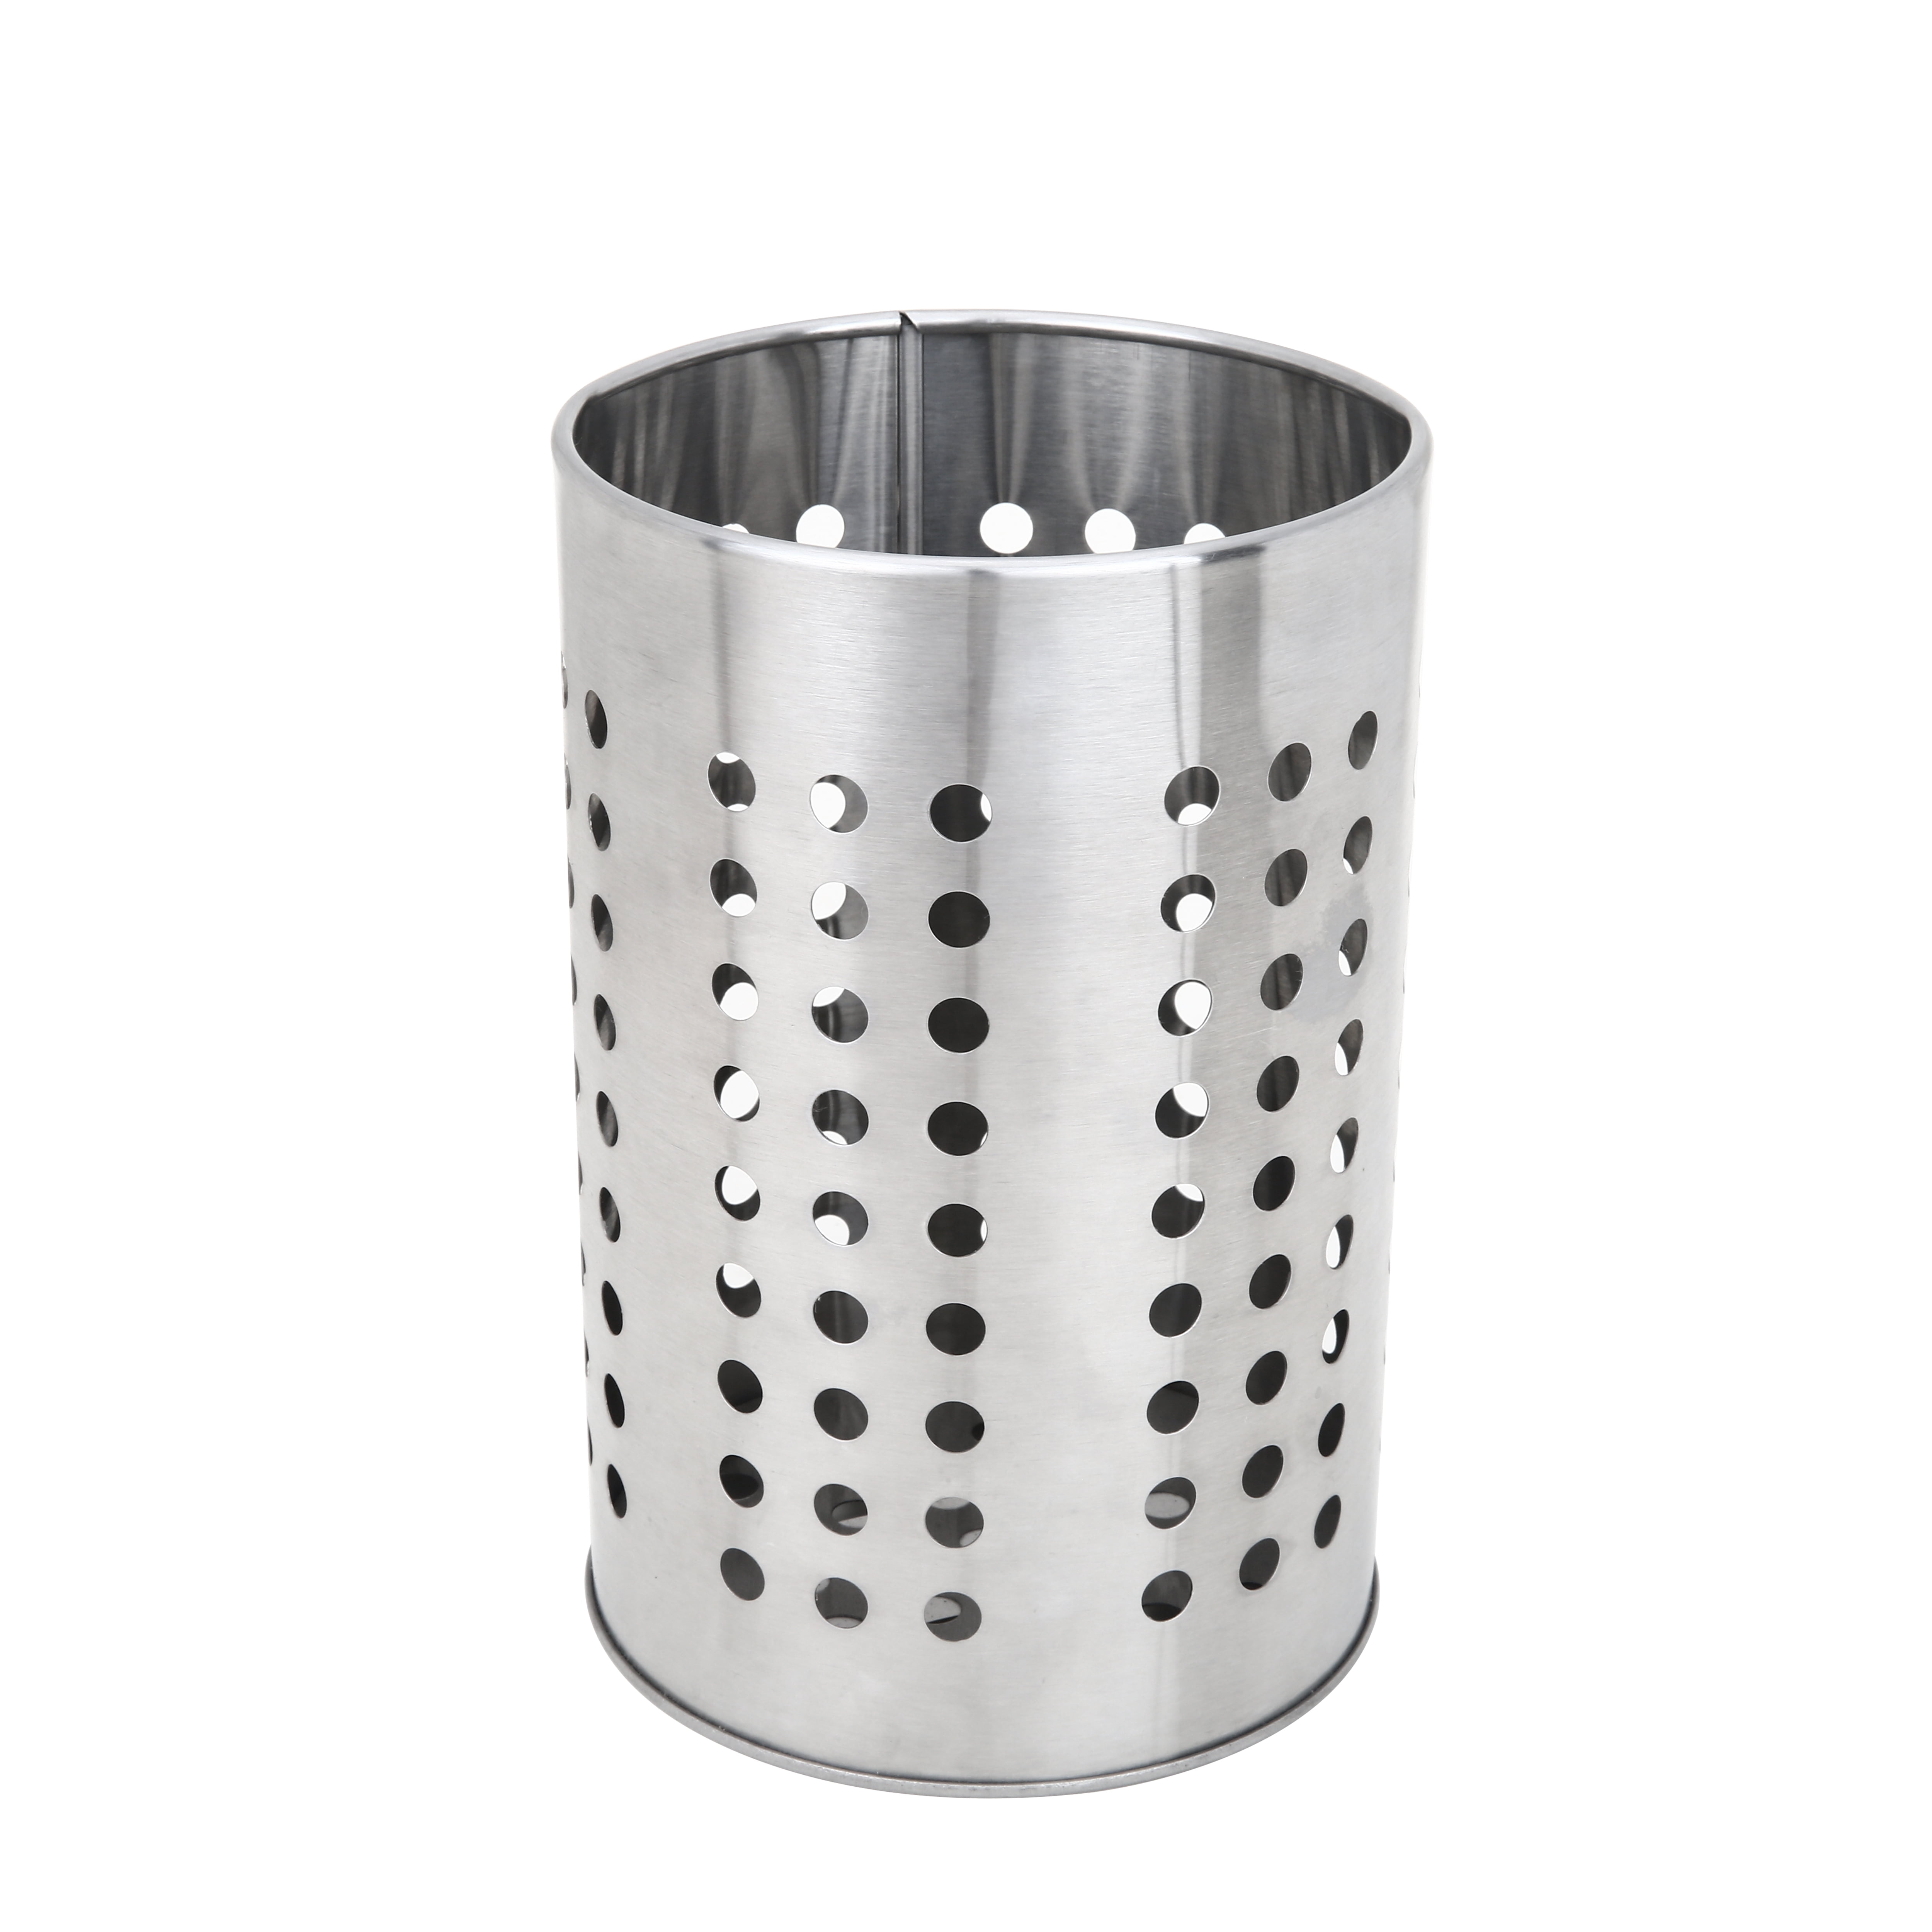 ORDNING Utensil holder, stainless steel, Height: 5 3/8 Diameter: 4 3/4 -  IKEA